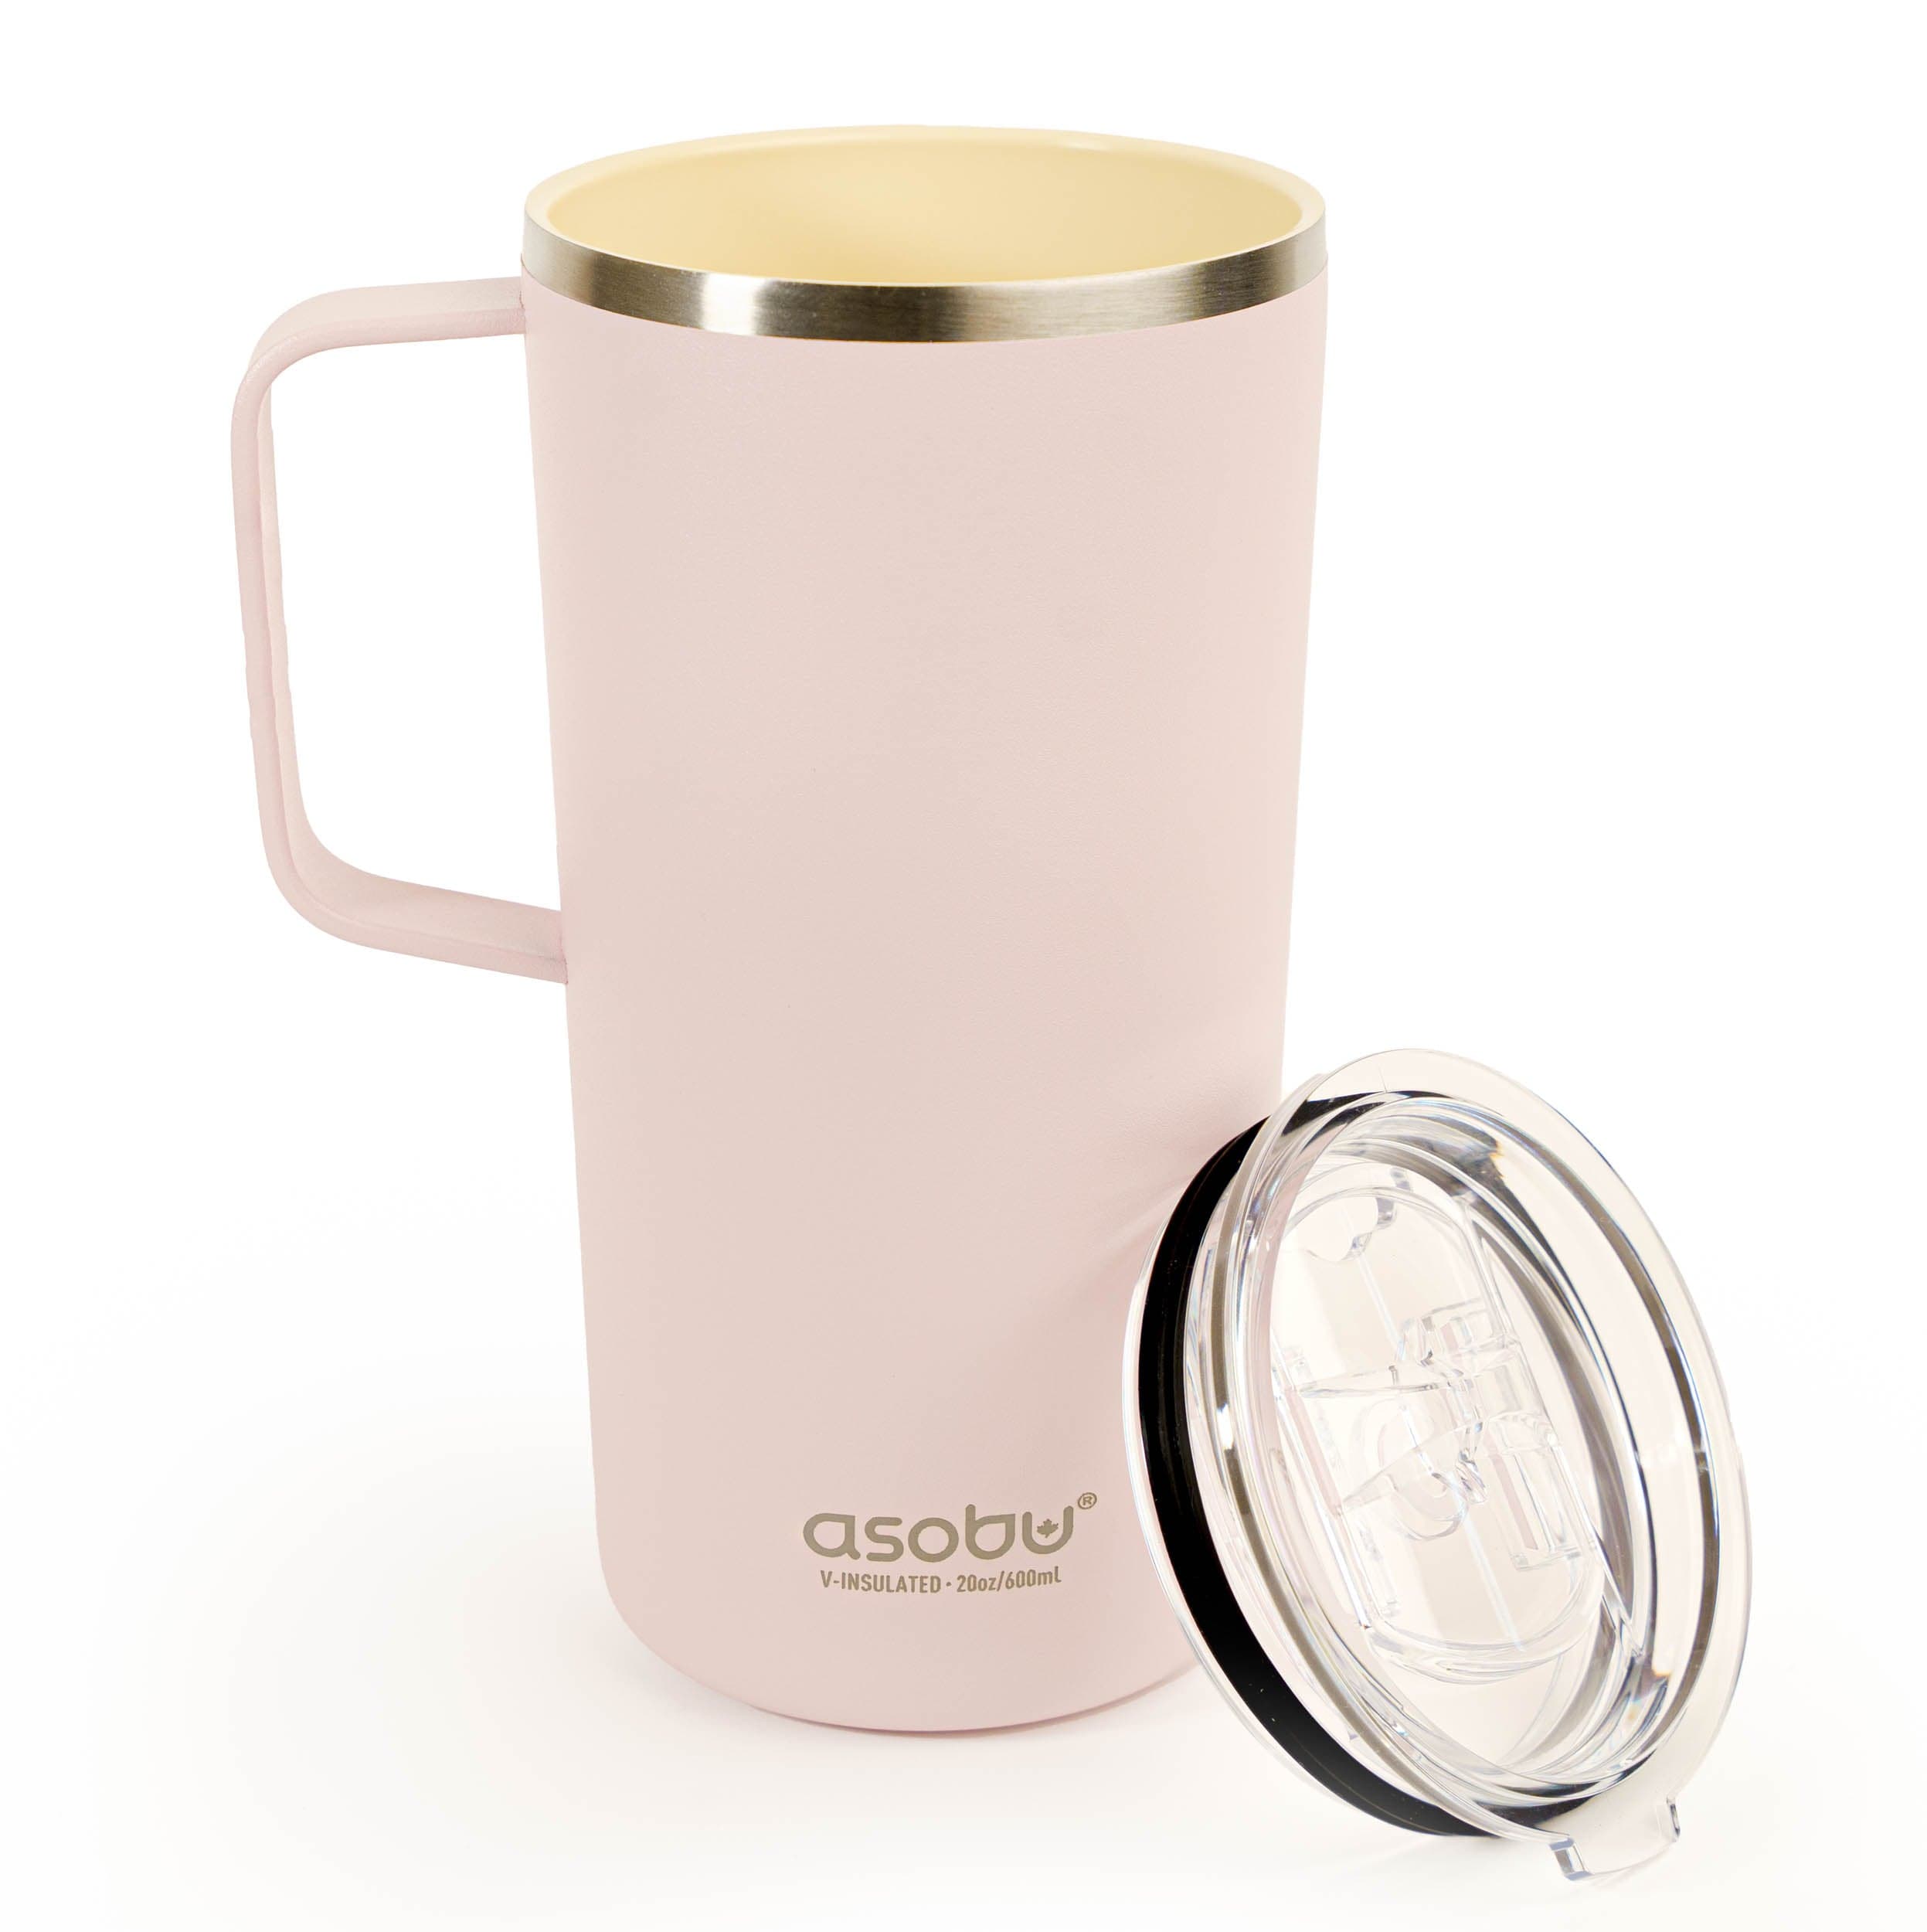 Asobu Indai Rozā Termo puodelis Asobu, 600 ml, SM90 rožinis